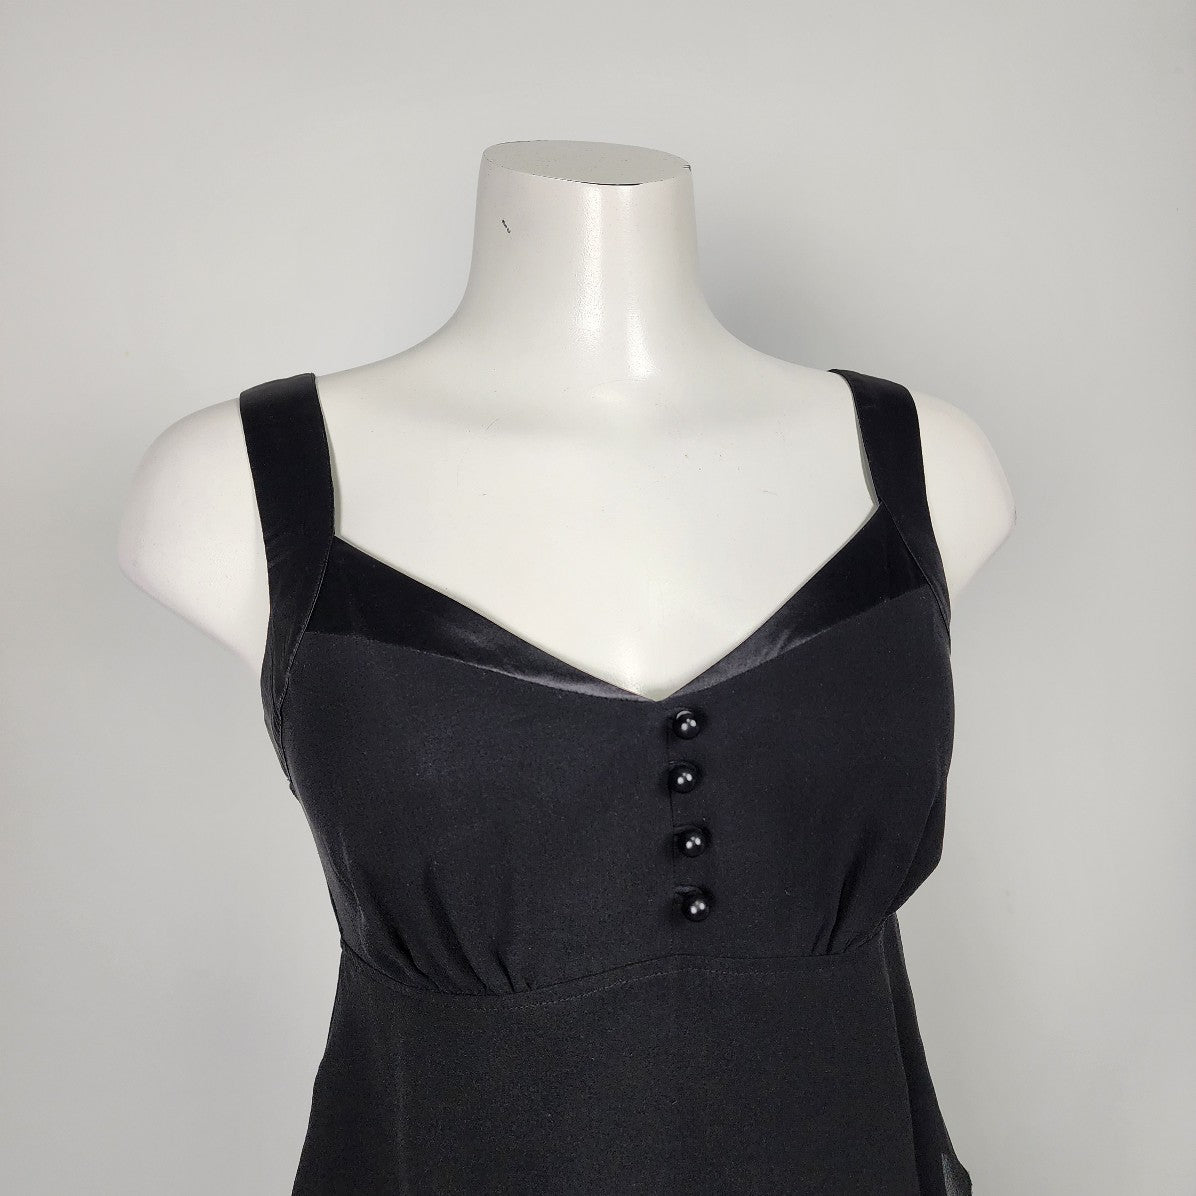 Kensie Black Silk Tiered Ruffle Skirt Mini Dress Size S